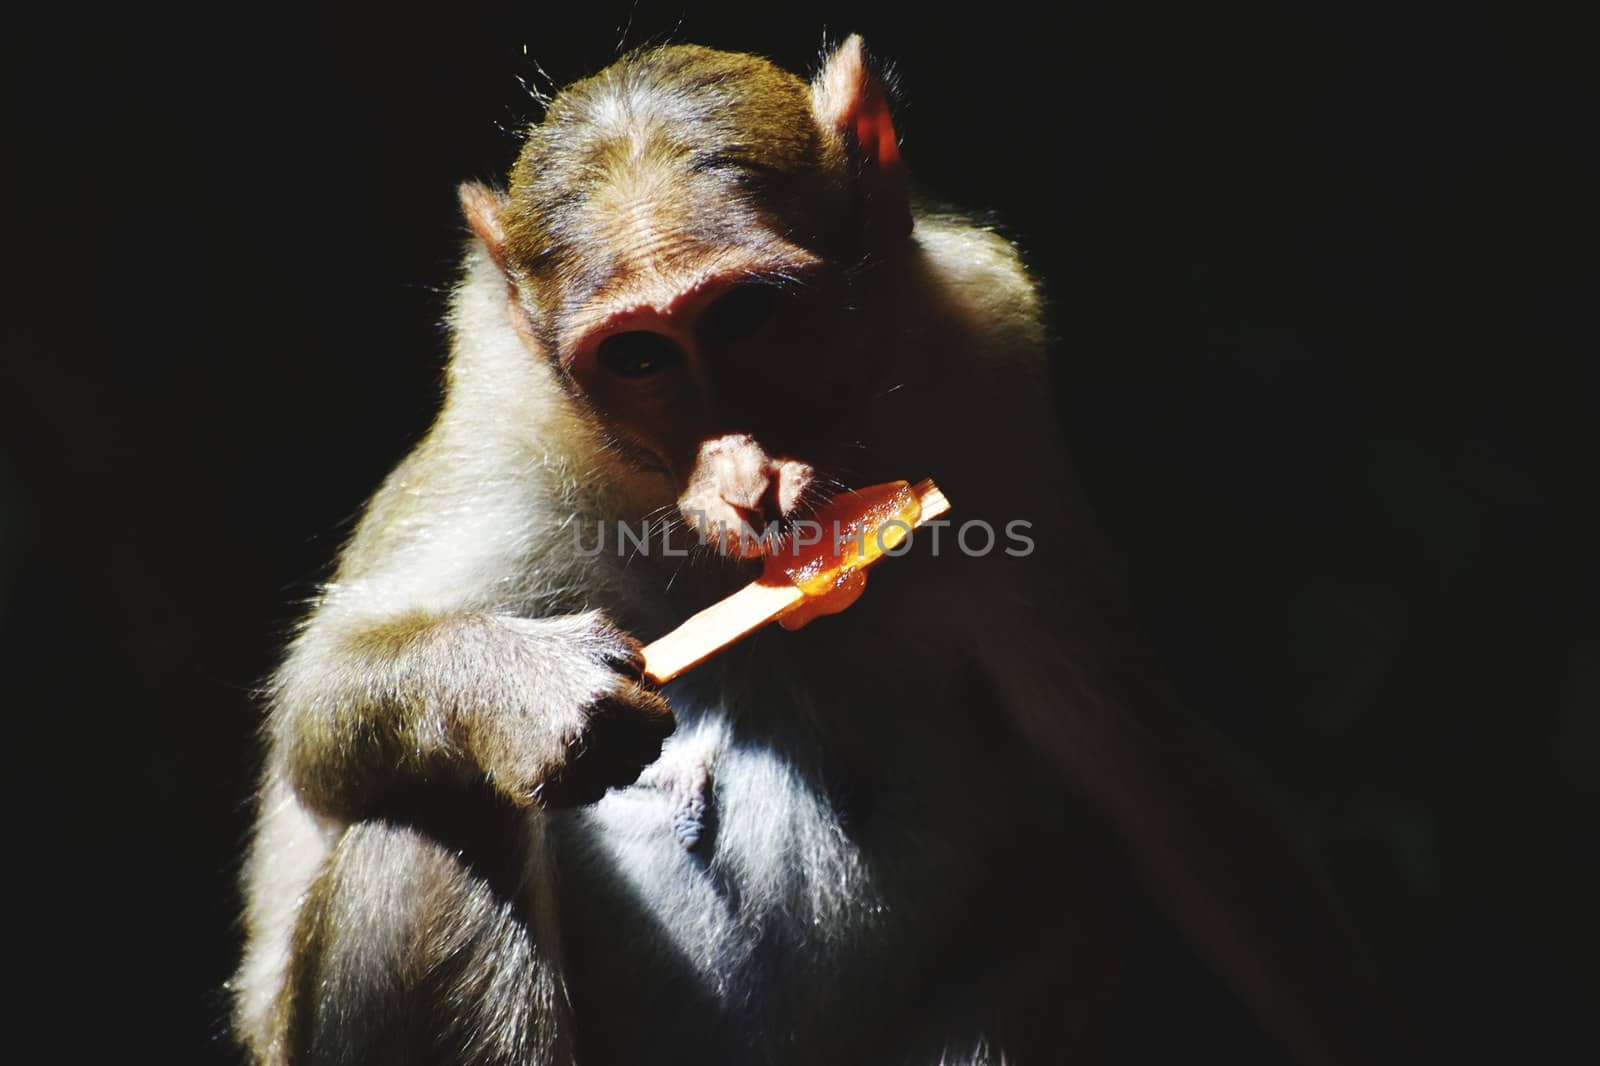 A Monkey is eating something by ravindrabhu165165@gmail.com